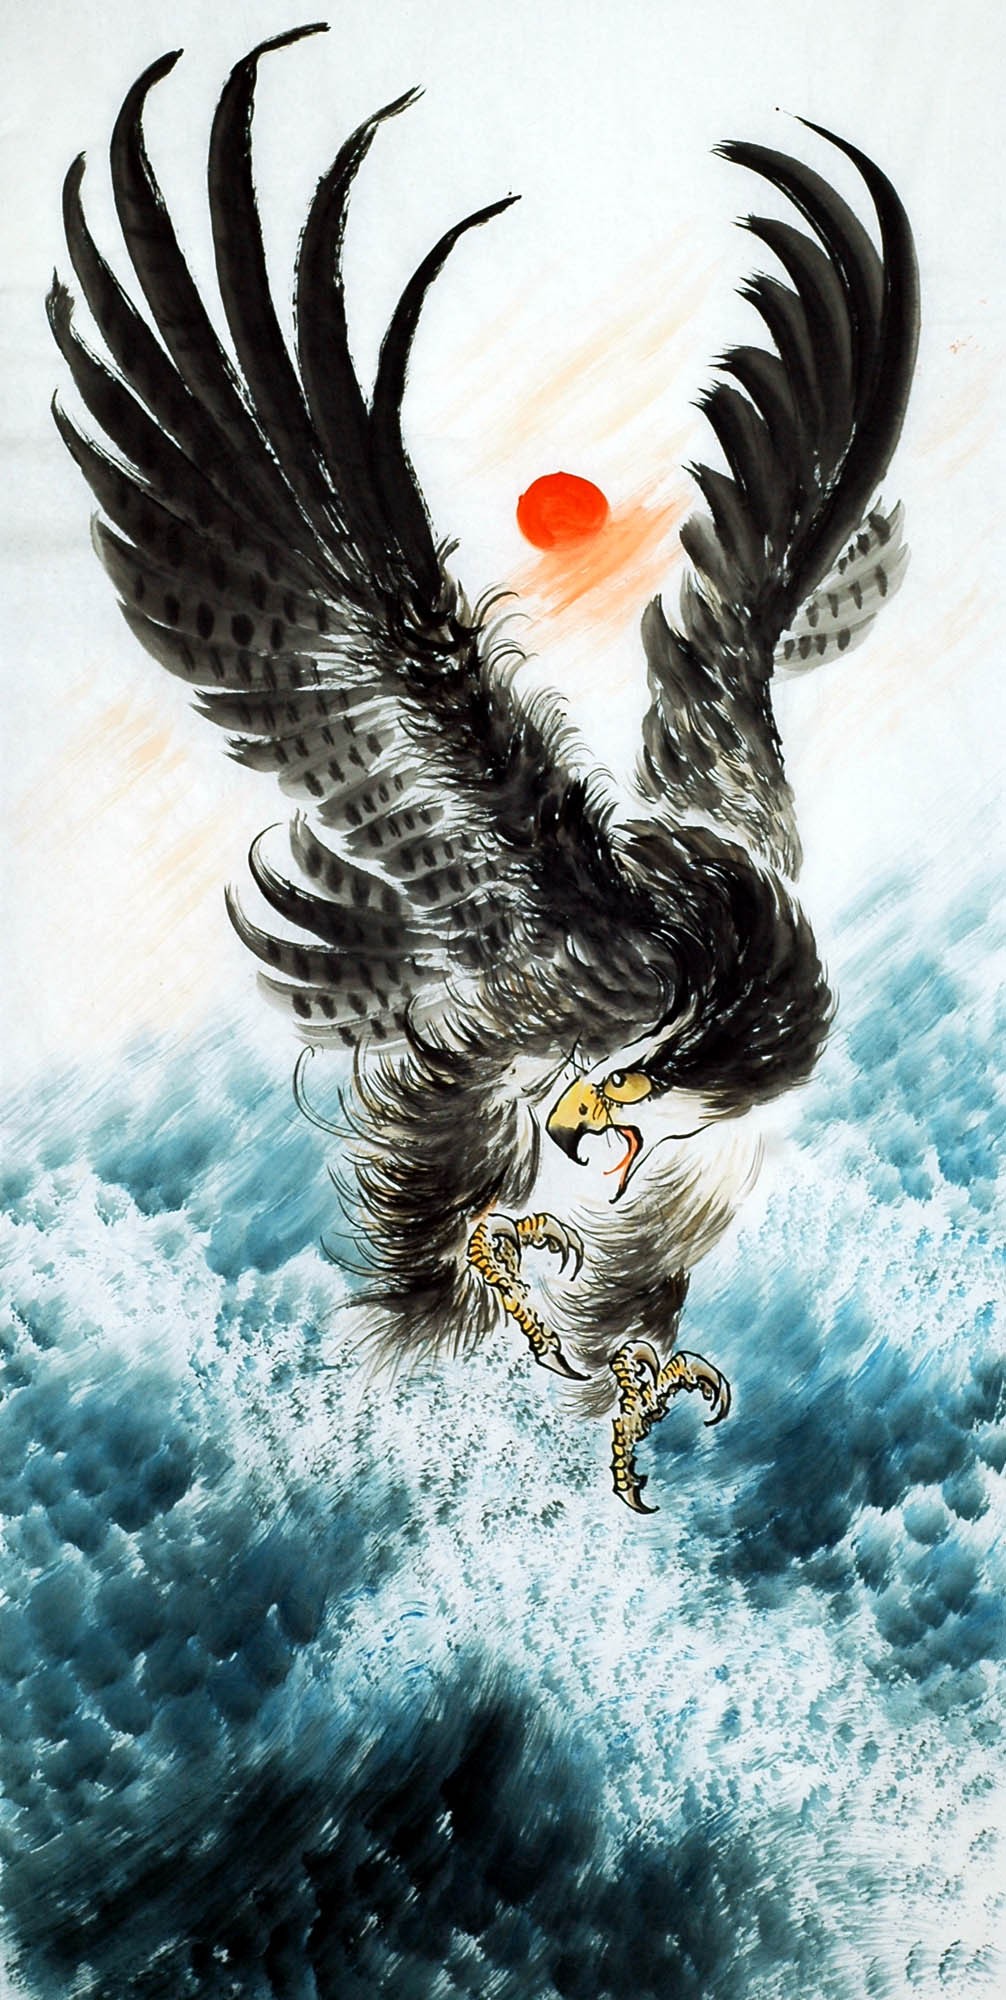 Chinese Eagle Painting - CNAG010537